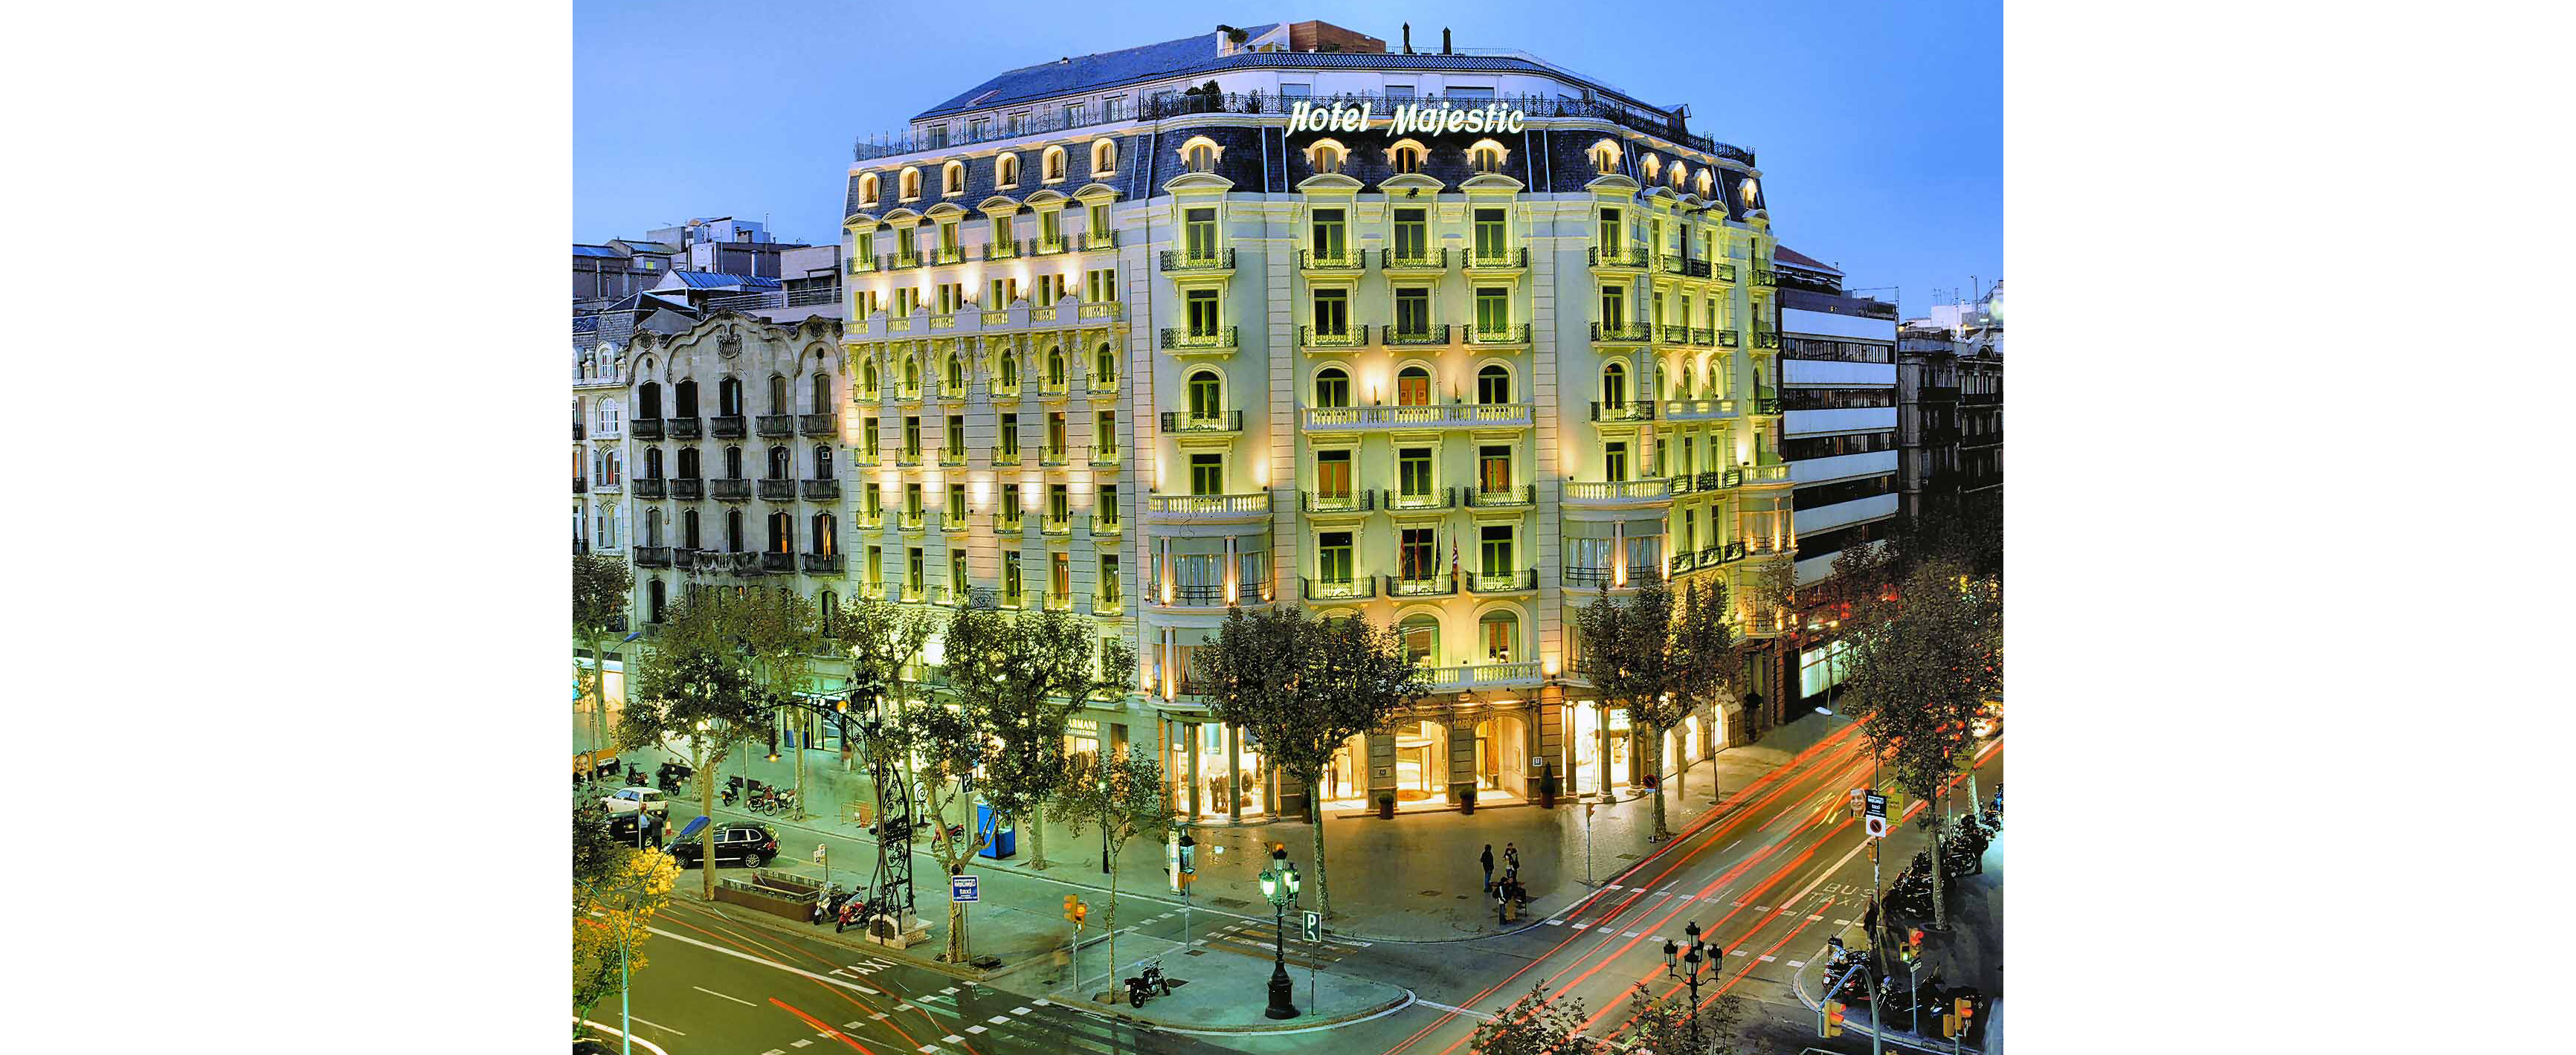  Barceló Torre de Madrid y Hotel Majestic de Barcelona, premiados por su eficiencia